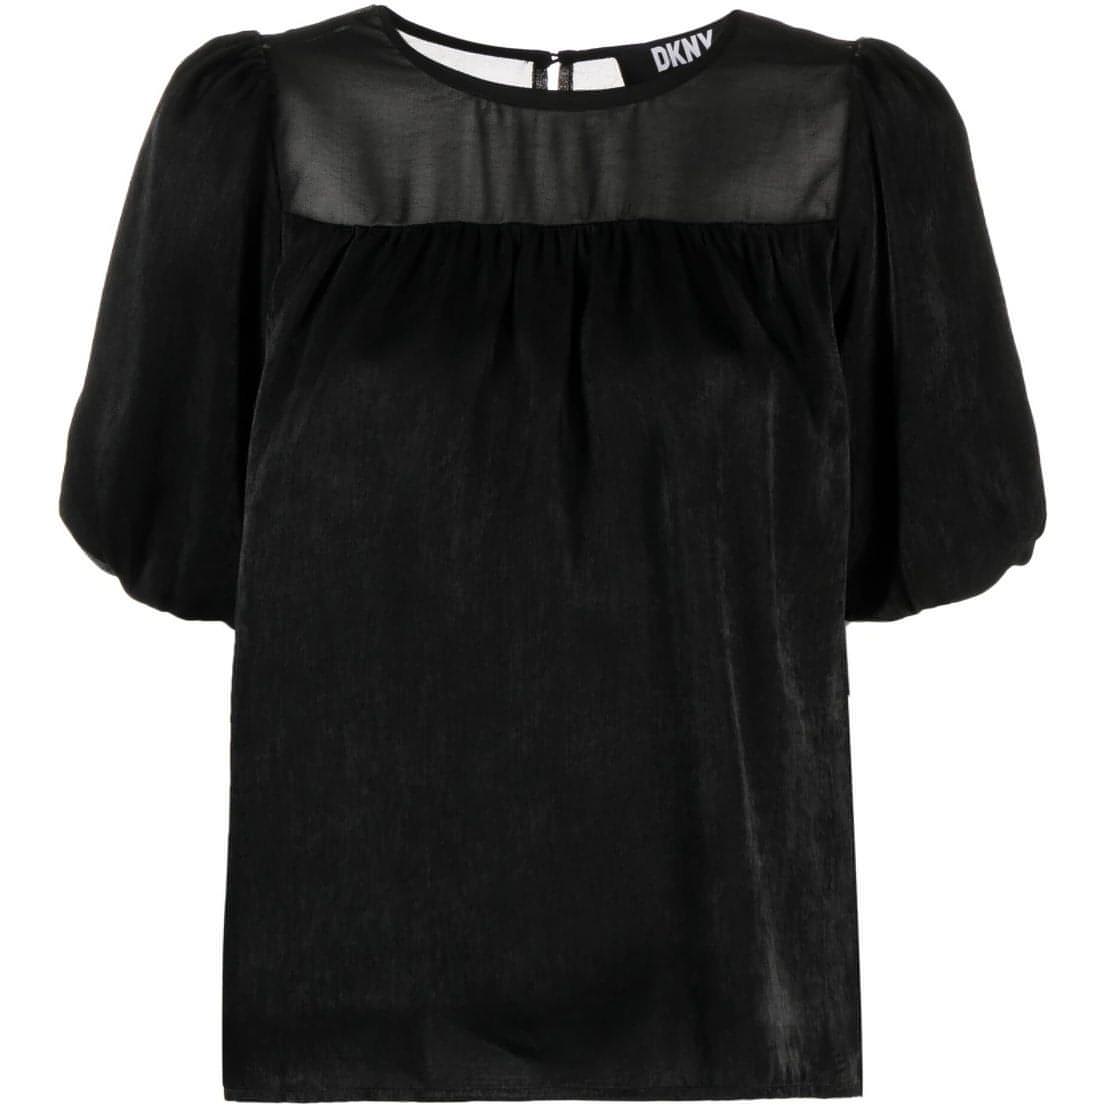 DKNY moteriška juoda palaidinė Mix media satin blouse